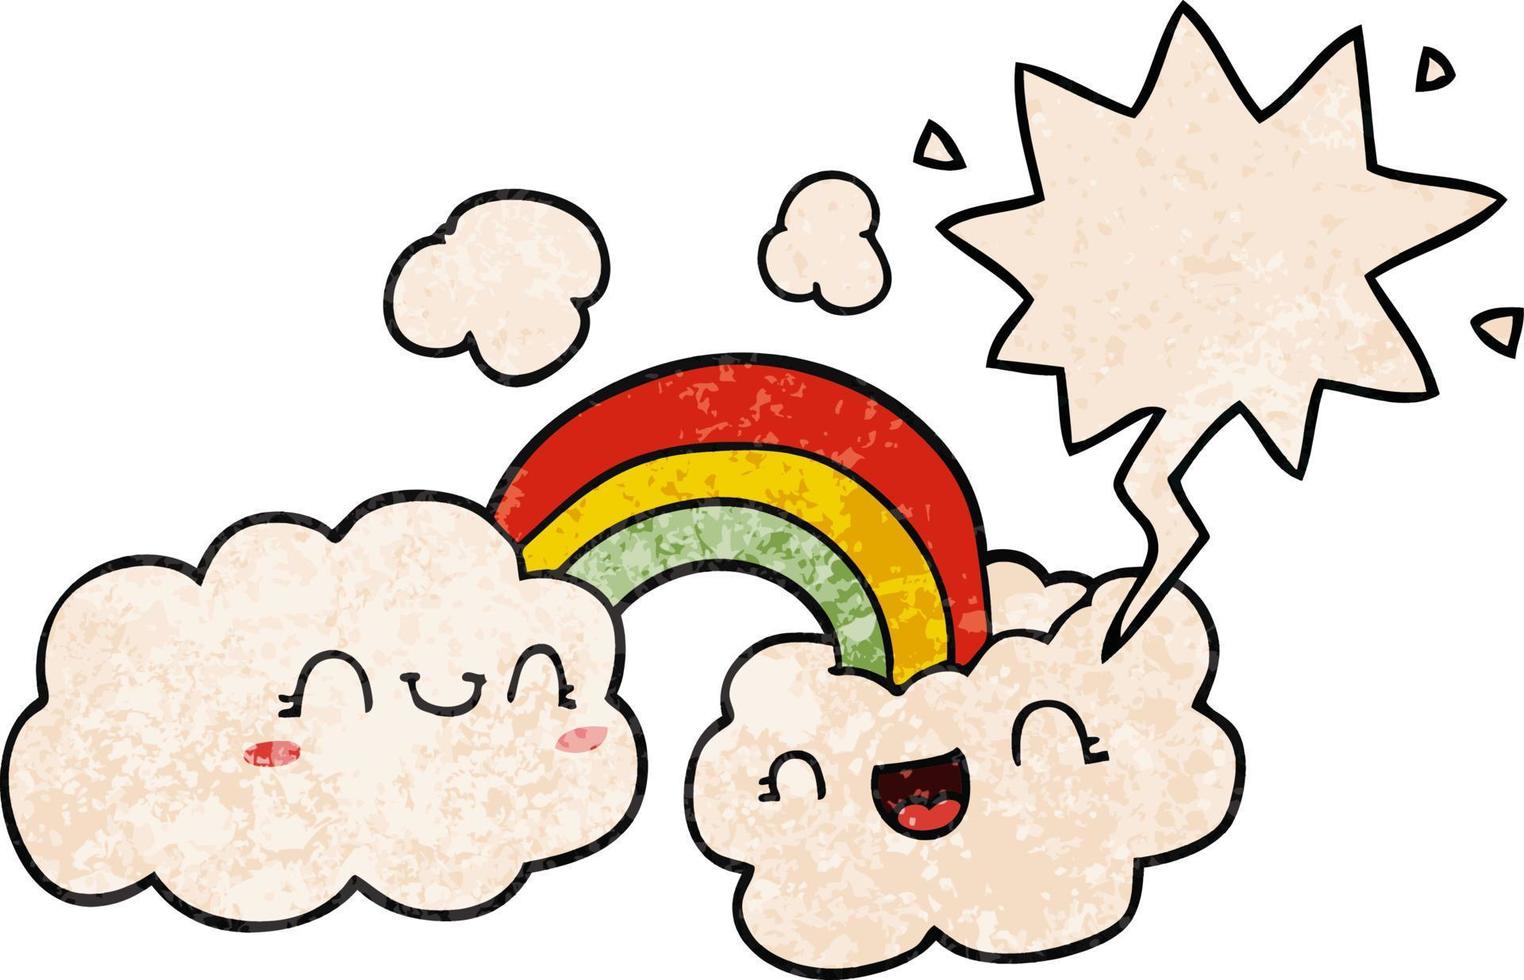 nubes de dibujos animados felices y arco iris y burbujas de habla en estilo de textura retro vector